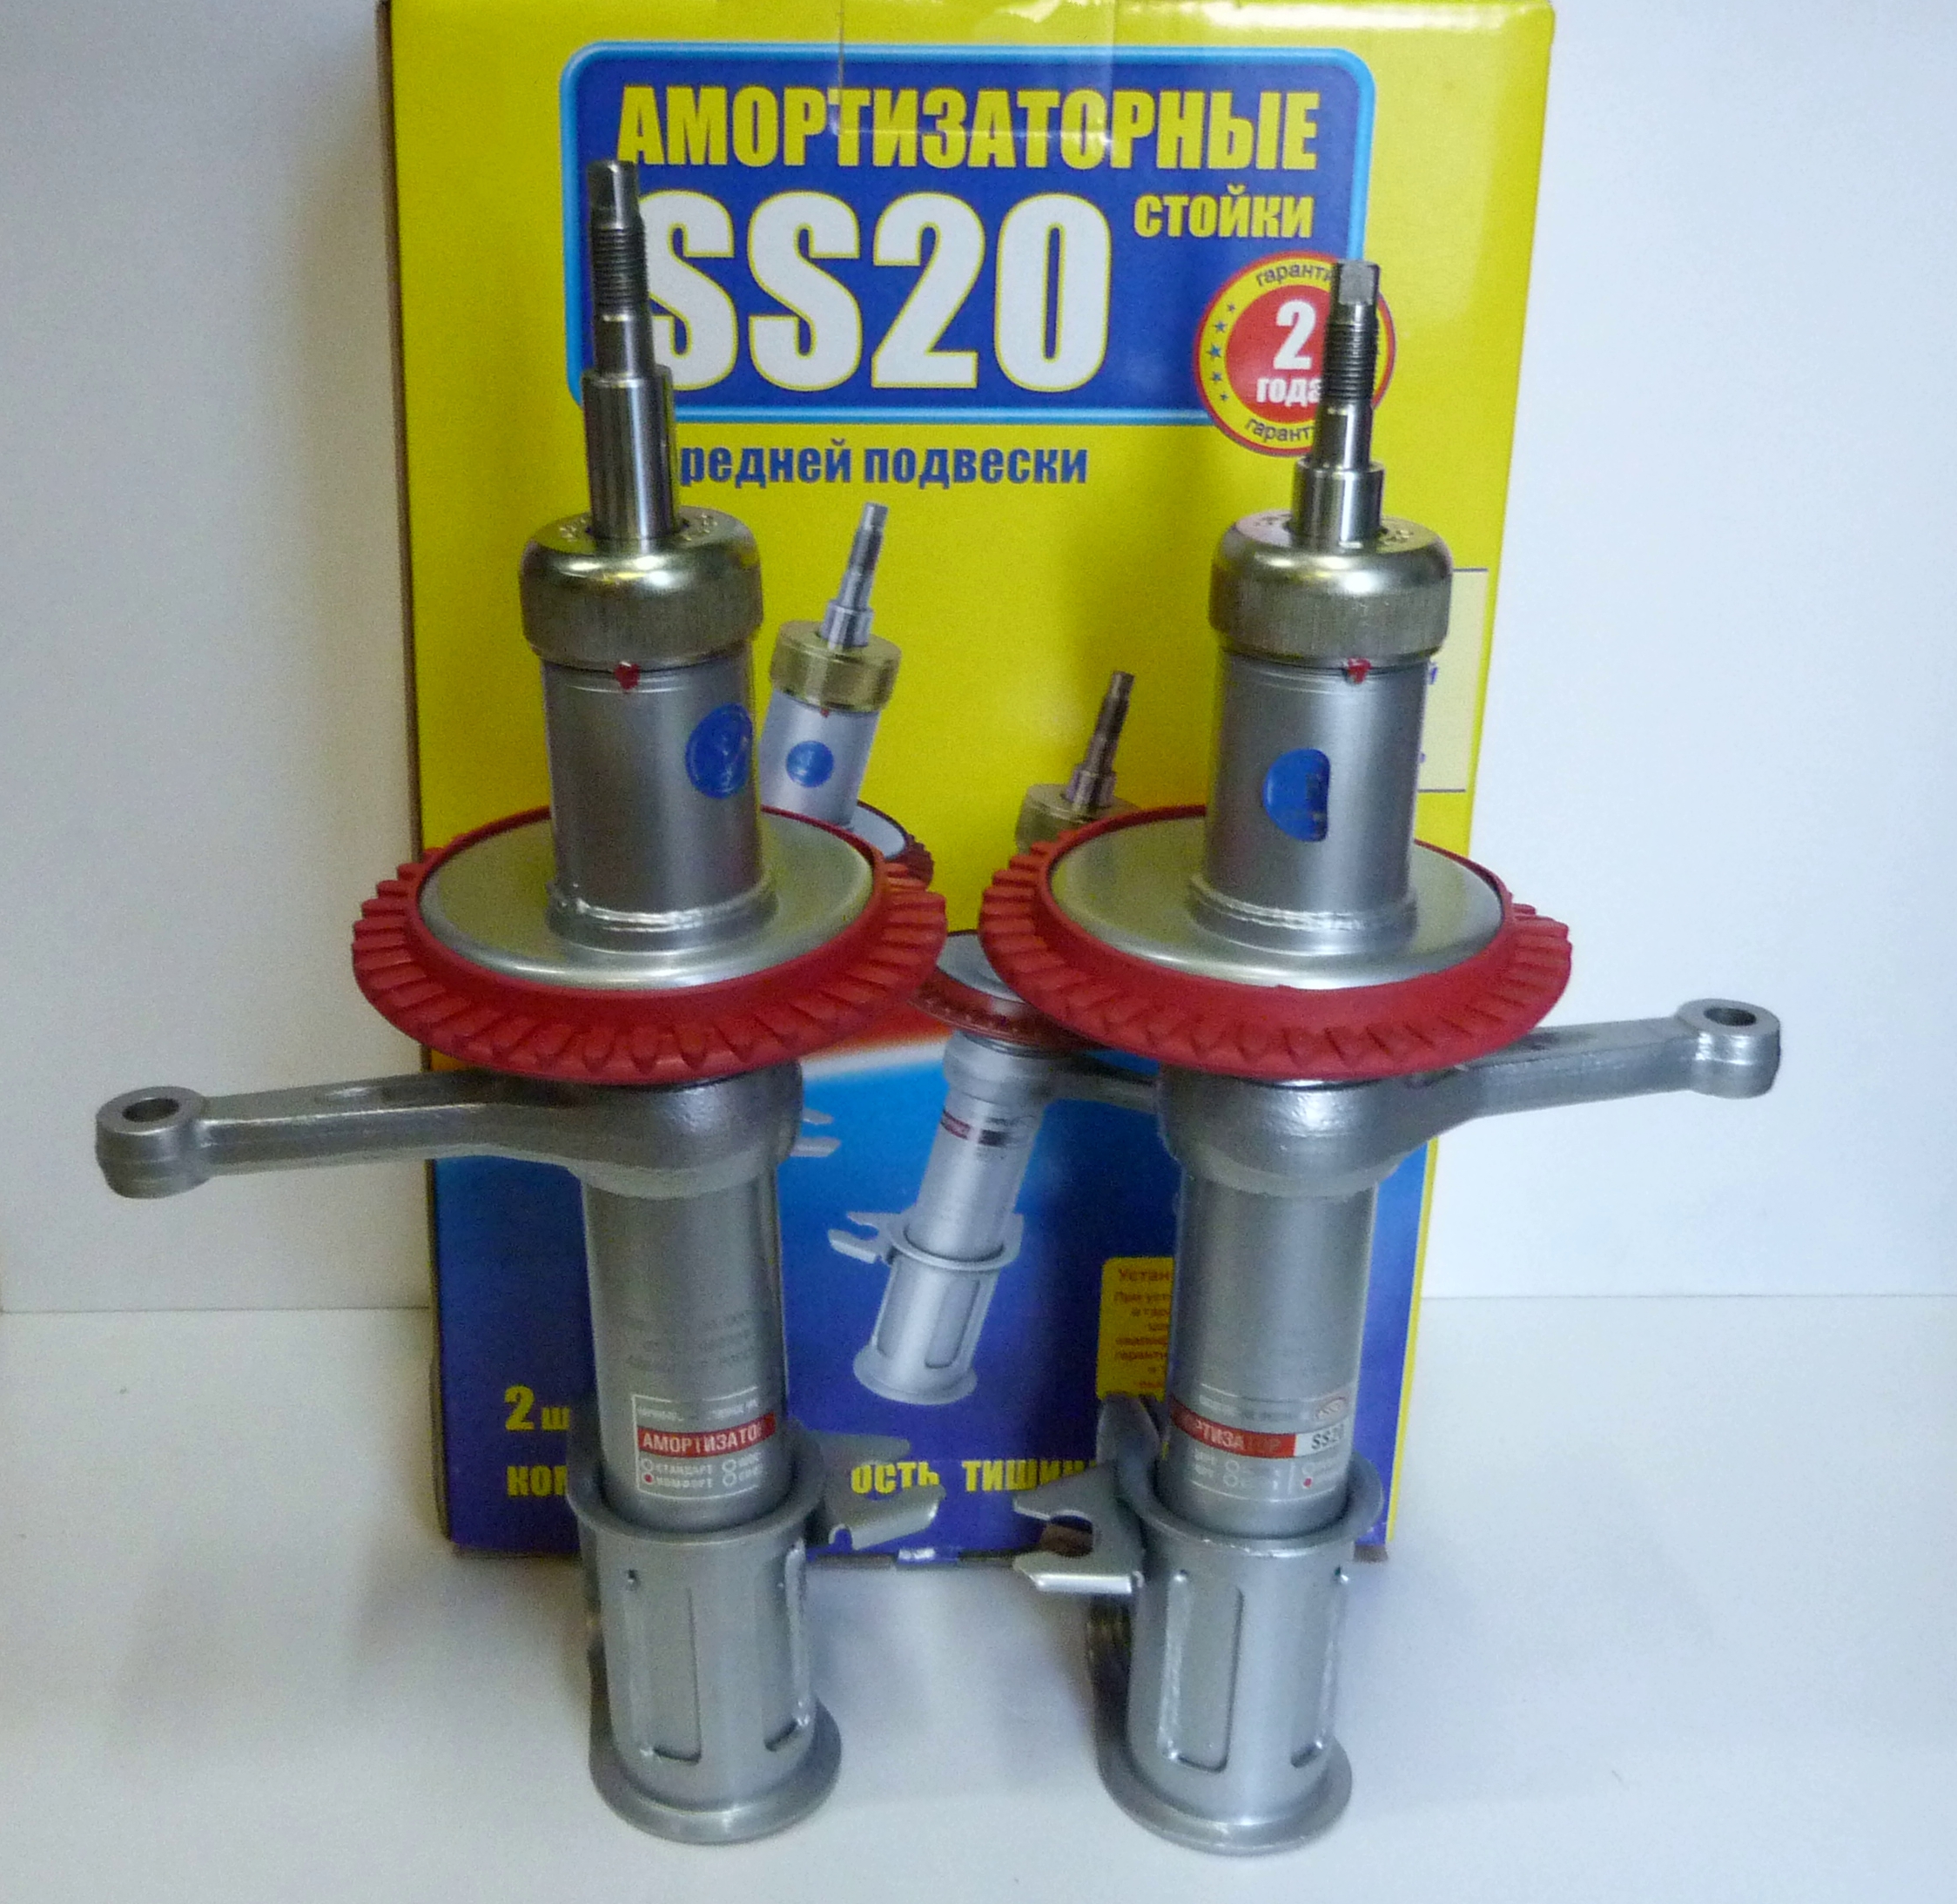 Стойки на: Купить амортизаторы и стойки для ВАЗ и иномарок в Екатеринбурге